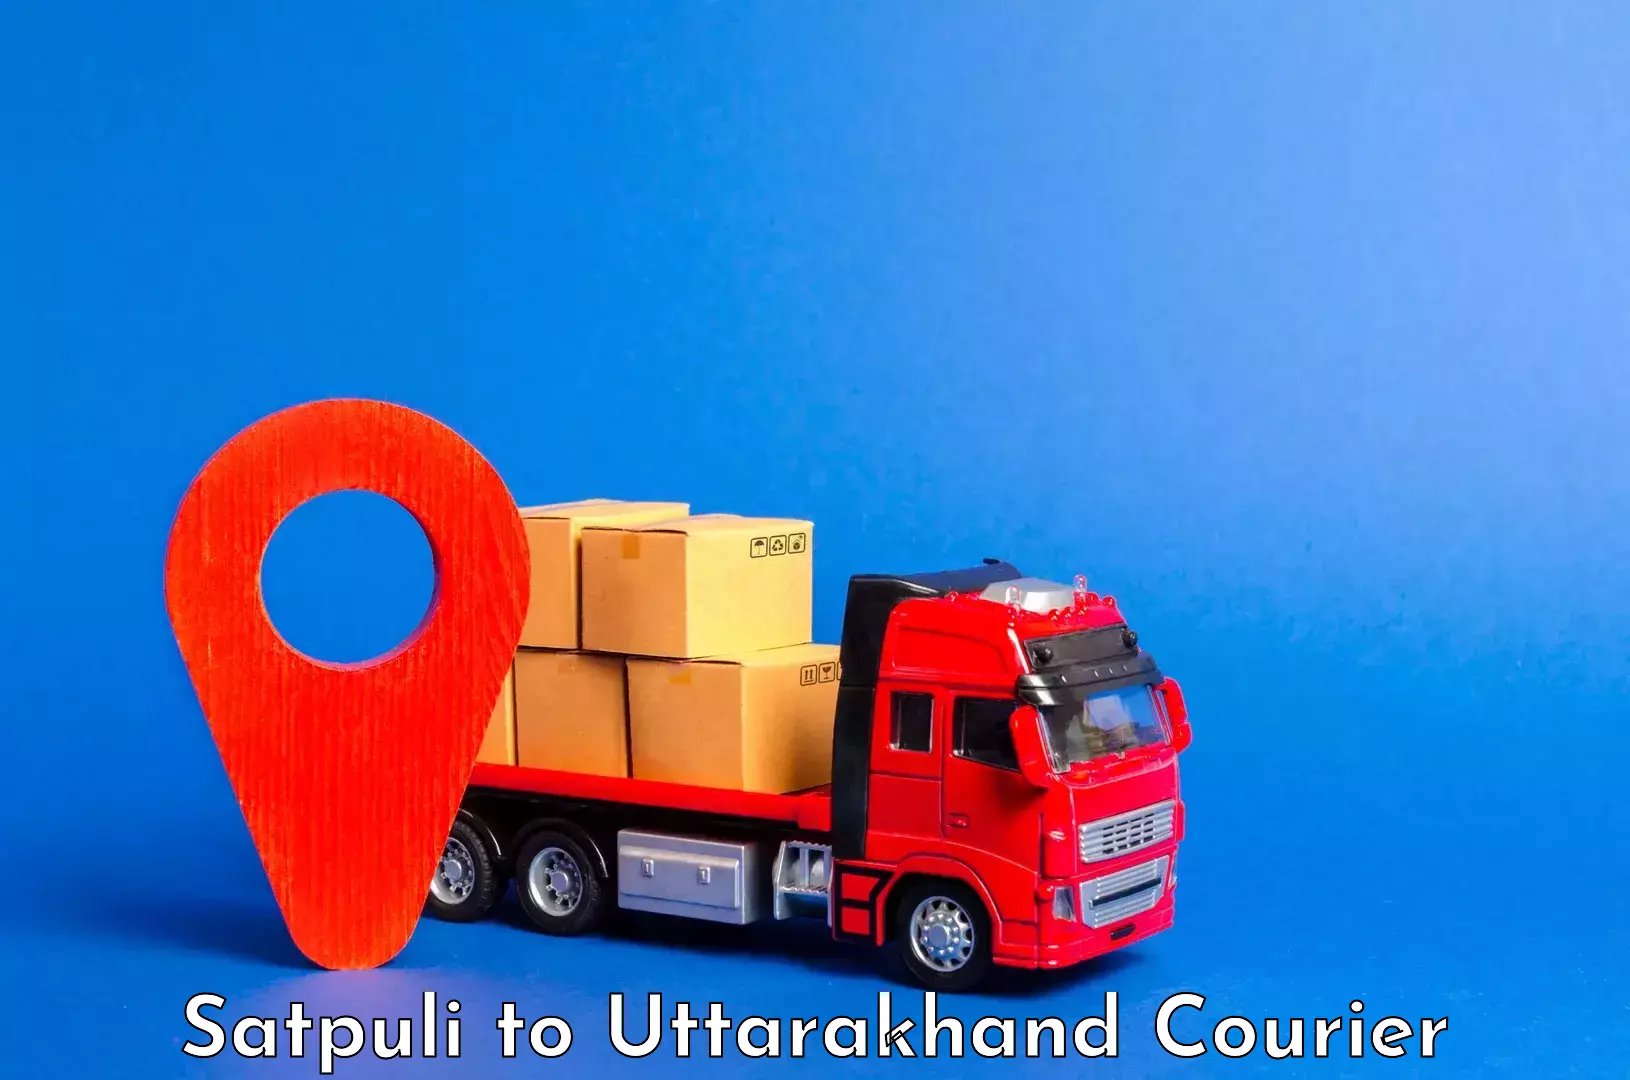 Luggage shipment tracking Satpuli to Uttarakhand